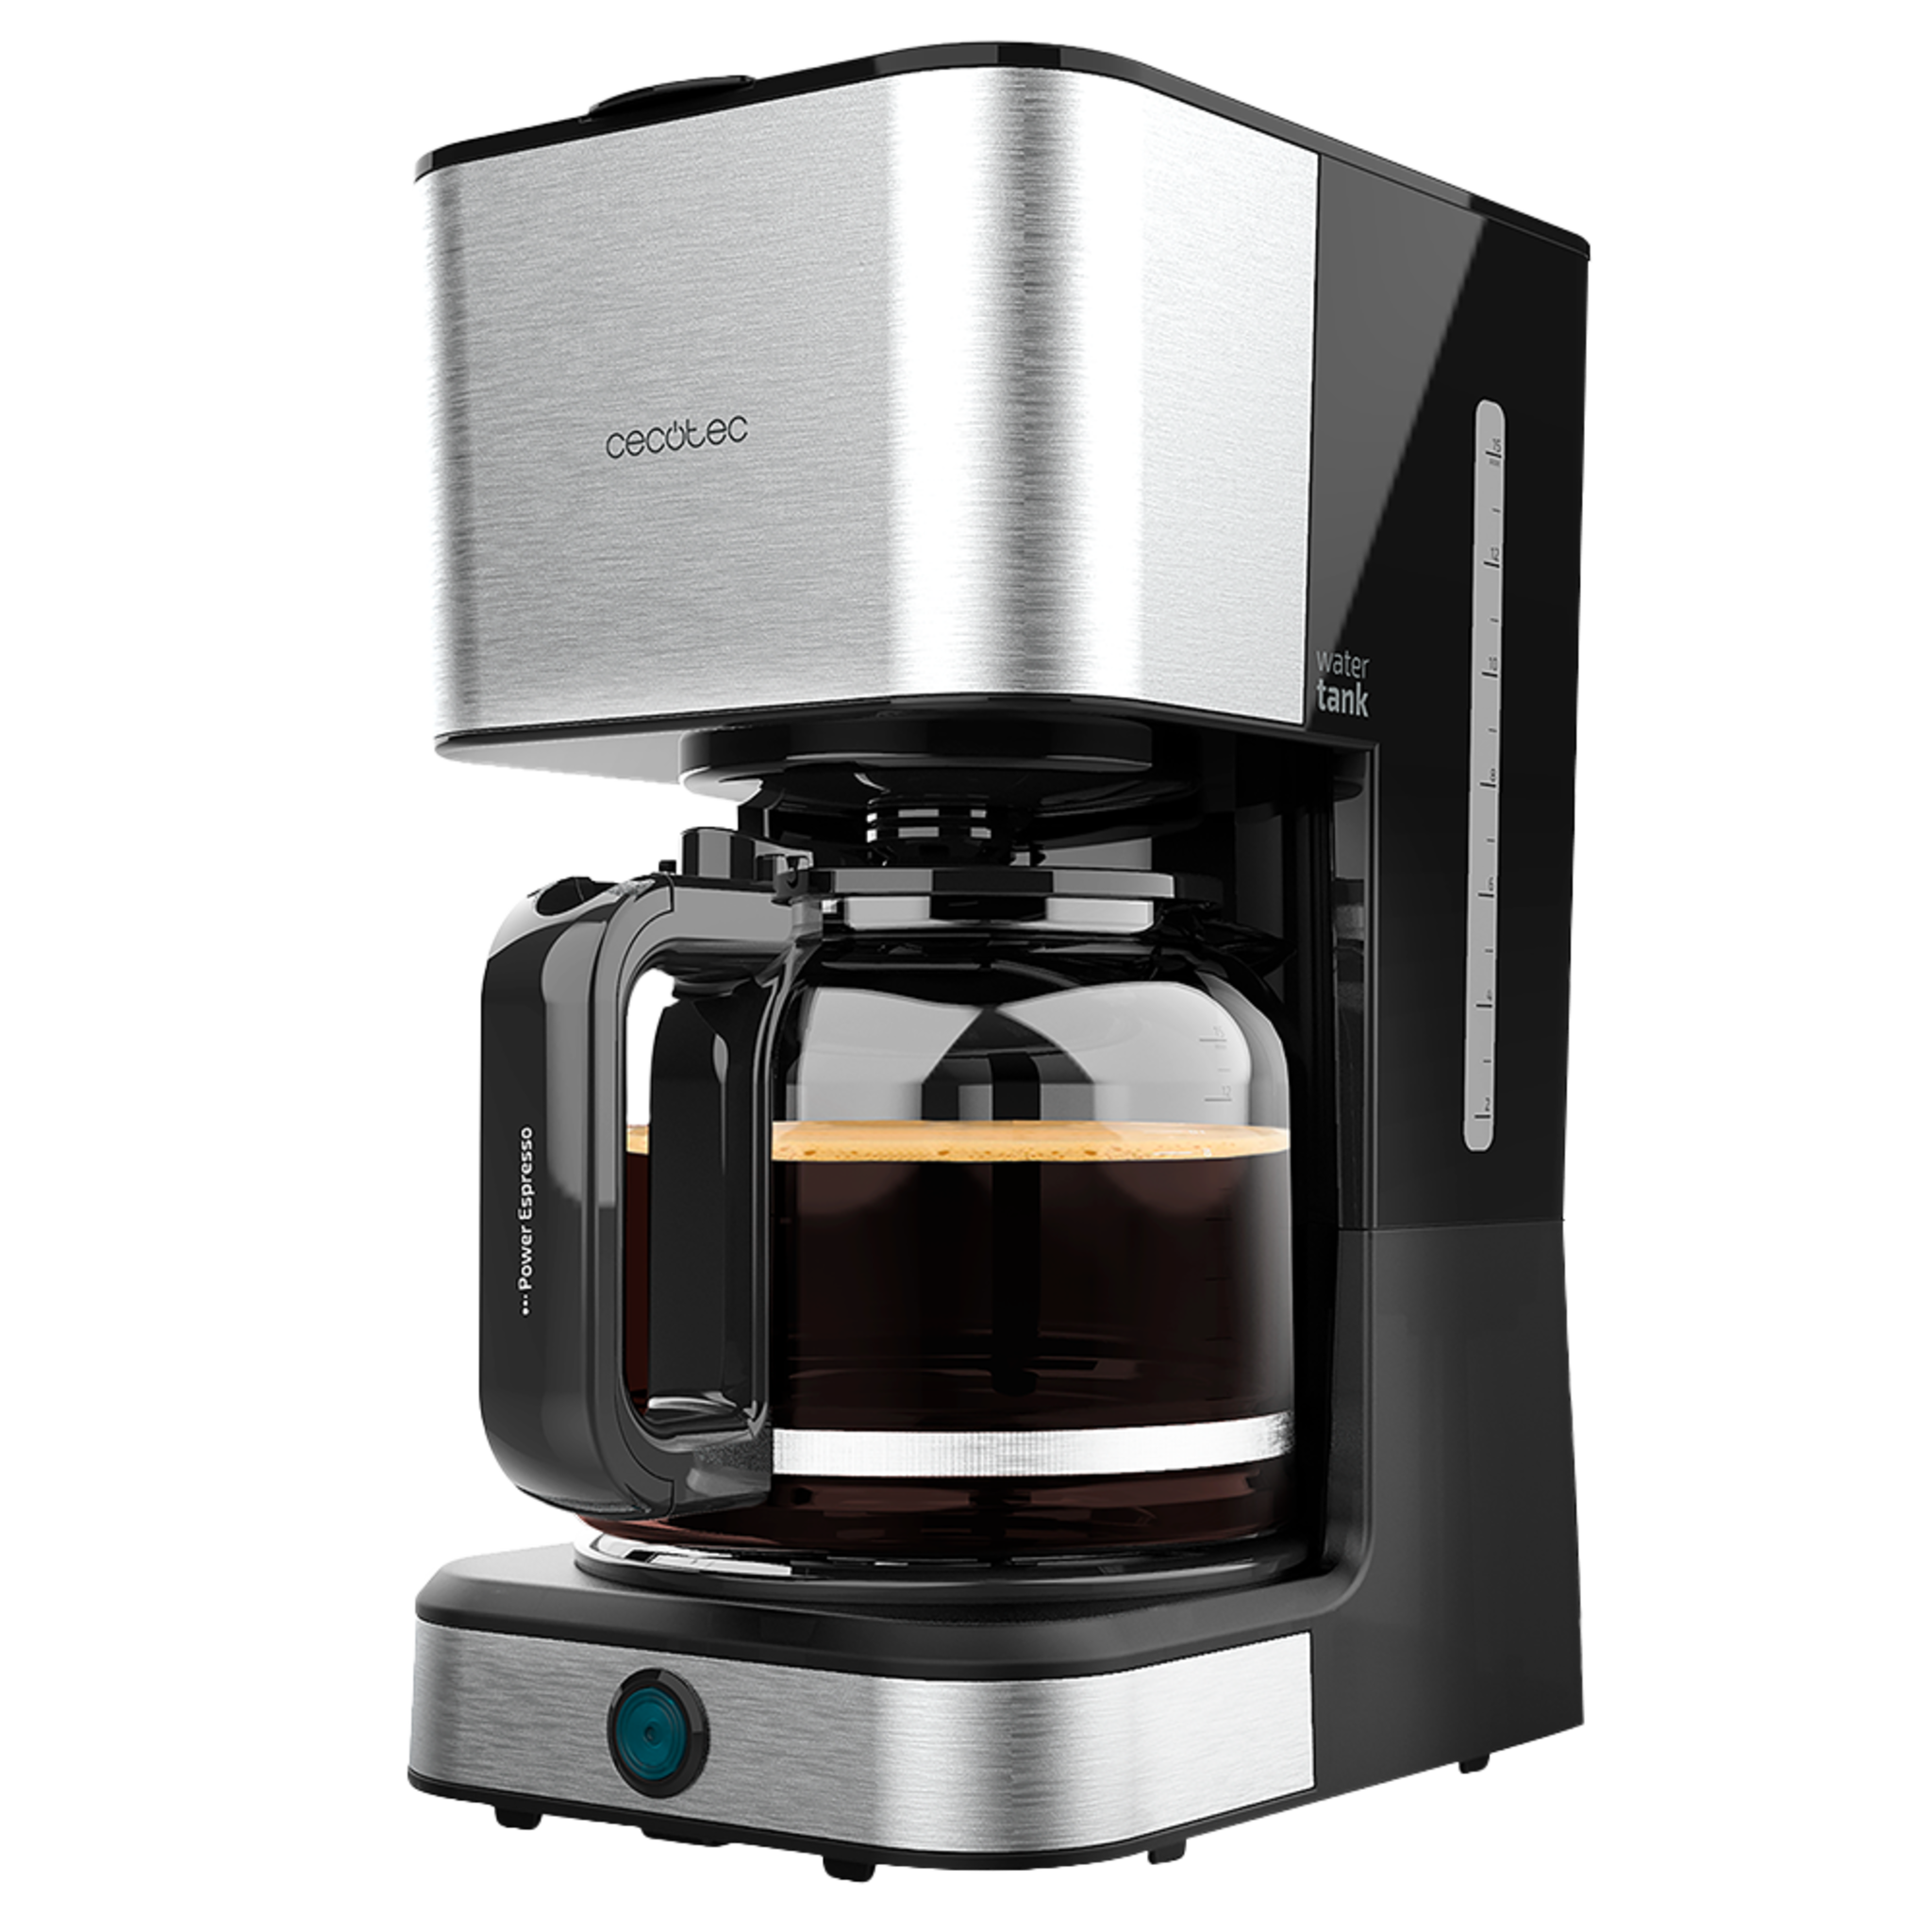 Cafetière Coffee 66 Heat. 950 W, technologie ExtemeAroma, fonction Réchauffer et Maintenir Chaud, carafe thermorésistante d'1,5 L, déconnexion automatique et finition en acier inoxydable.